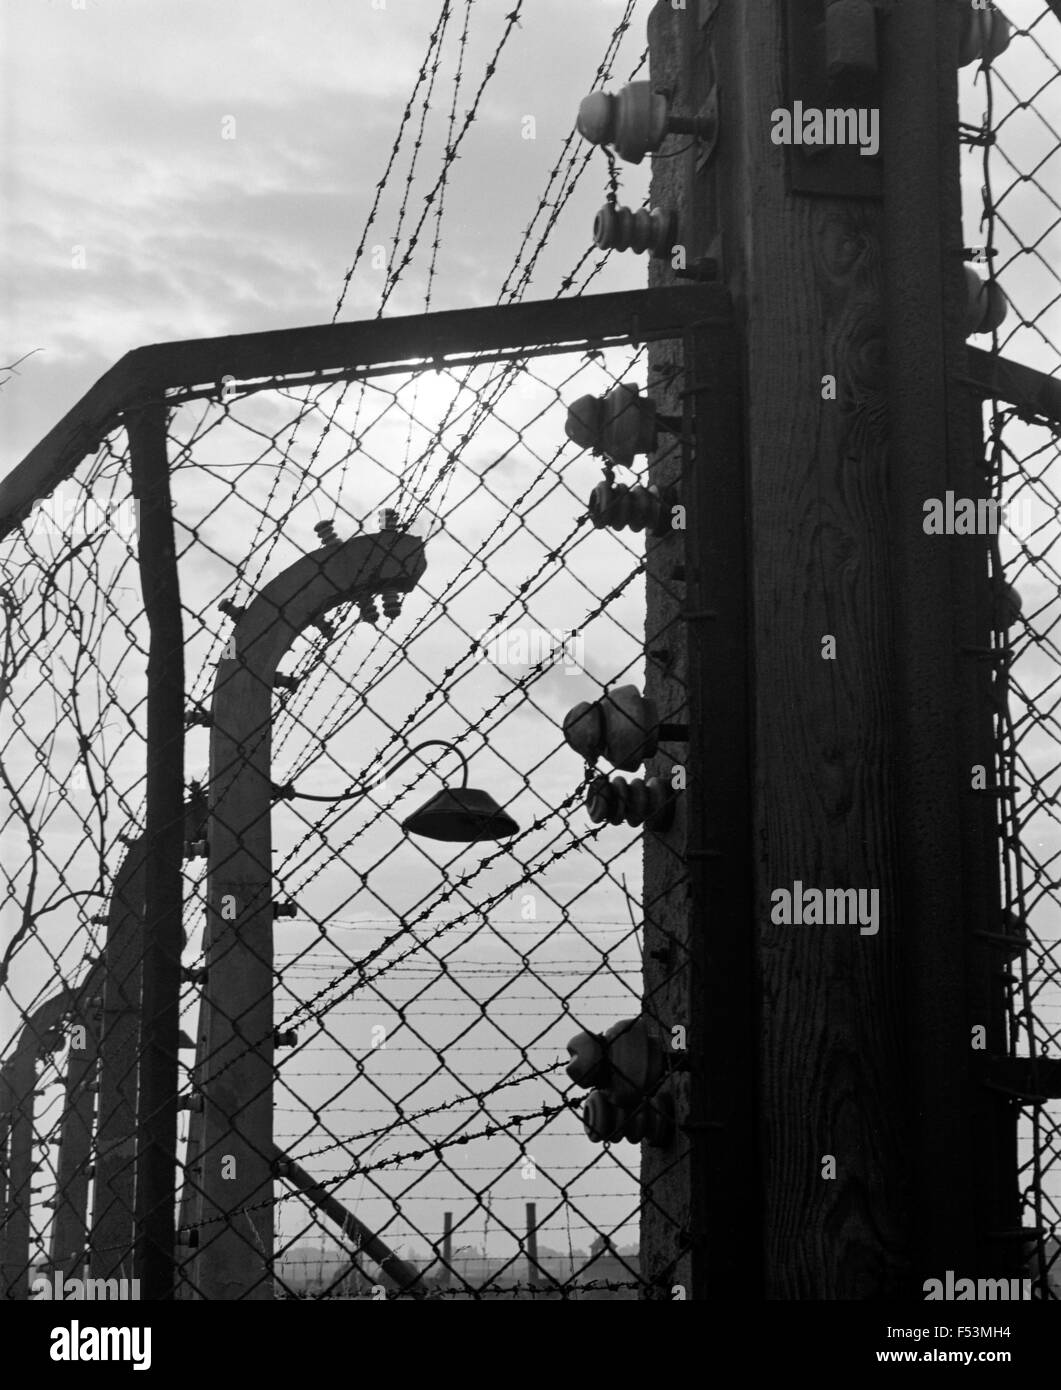 15.08.1985, Oswiecim, Kleinpolen, Polen - Strommast am Zaun der Konzentration Lager Auschwitz-Birkenau, staatliches Museum Auschwitz-Birkenau. Am 27. Januar 1945 wurde das Konzentrationslager Auschwitz durch die Rote Armee befreit. Auschwitz war das größte Vernichtungslager des Dritten Reiches, hier mehr als 1 Million Menschen vergast, erschossen oder starben an den Folgen medizinischer Experimente, Missbrauch, Krankheit und Unterernährung getötet wurden. 00P850815A124CAROEX. JPG - nicht für den Verkauf in G E R M A N Y, A U S T R I A S W I T Z E R L A N D [MODEL-RELEASE: nicht anwendbar, PROPERTY-RELEASE: kein (C) Caro Fotoagentur / M Stockfoto